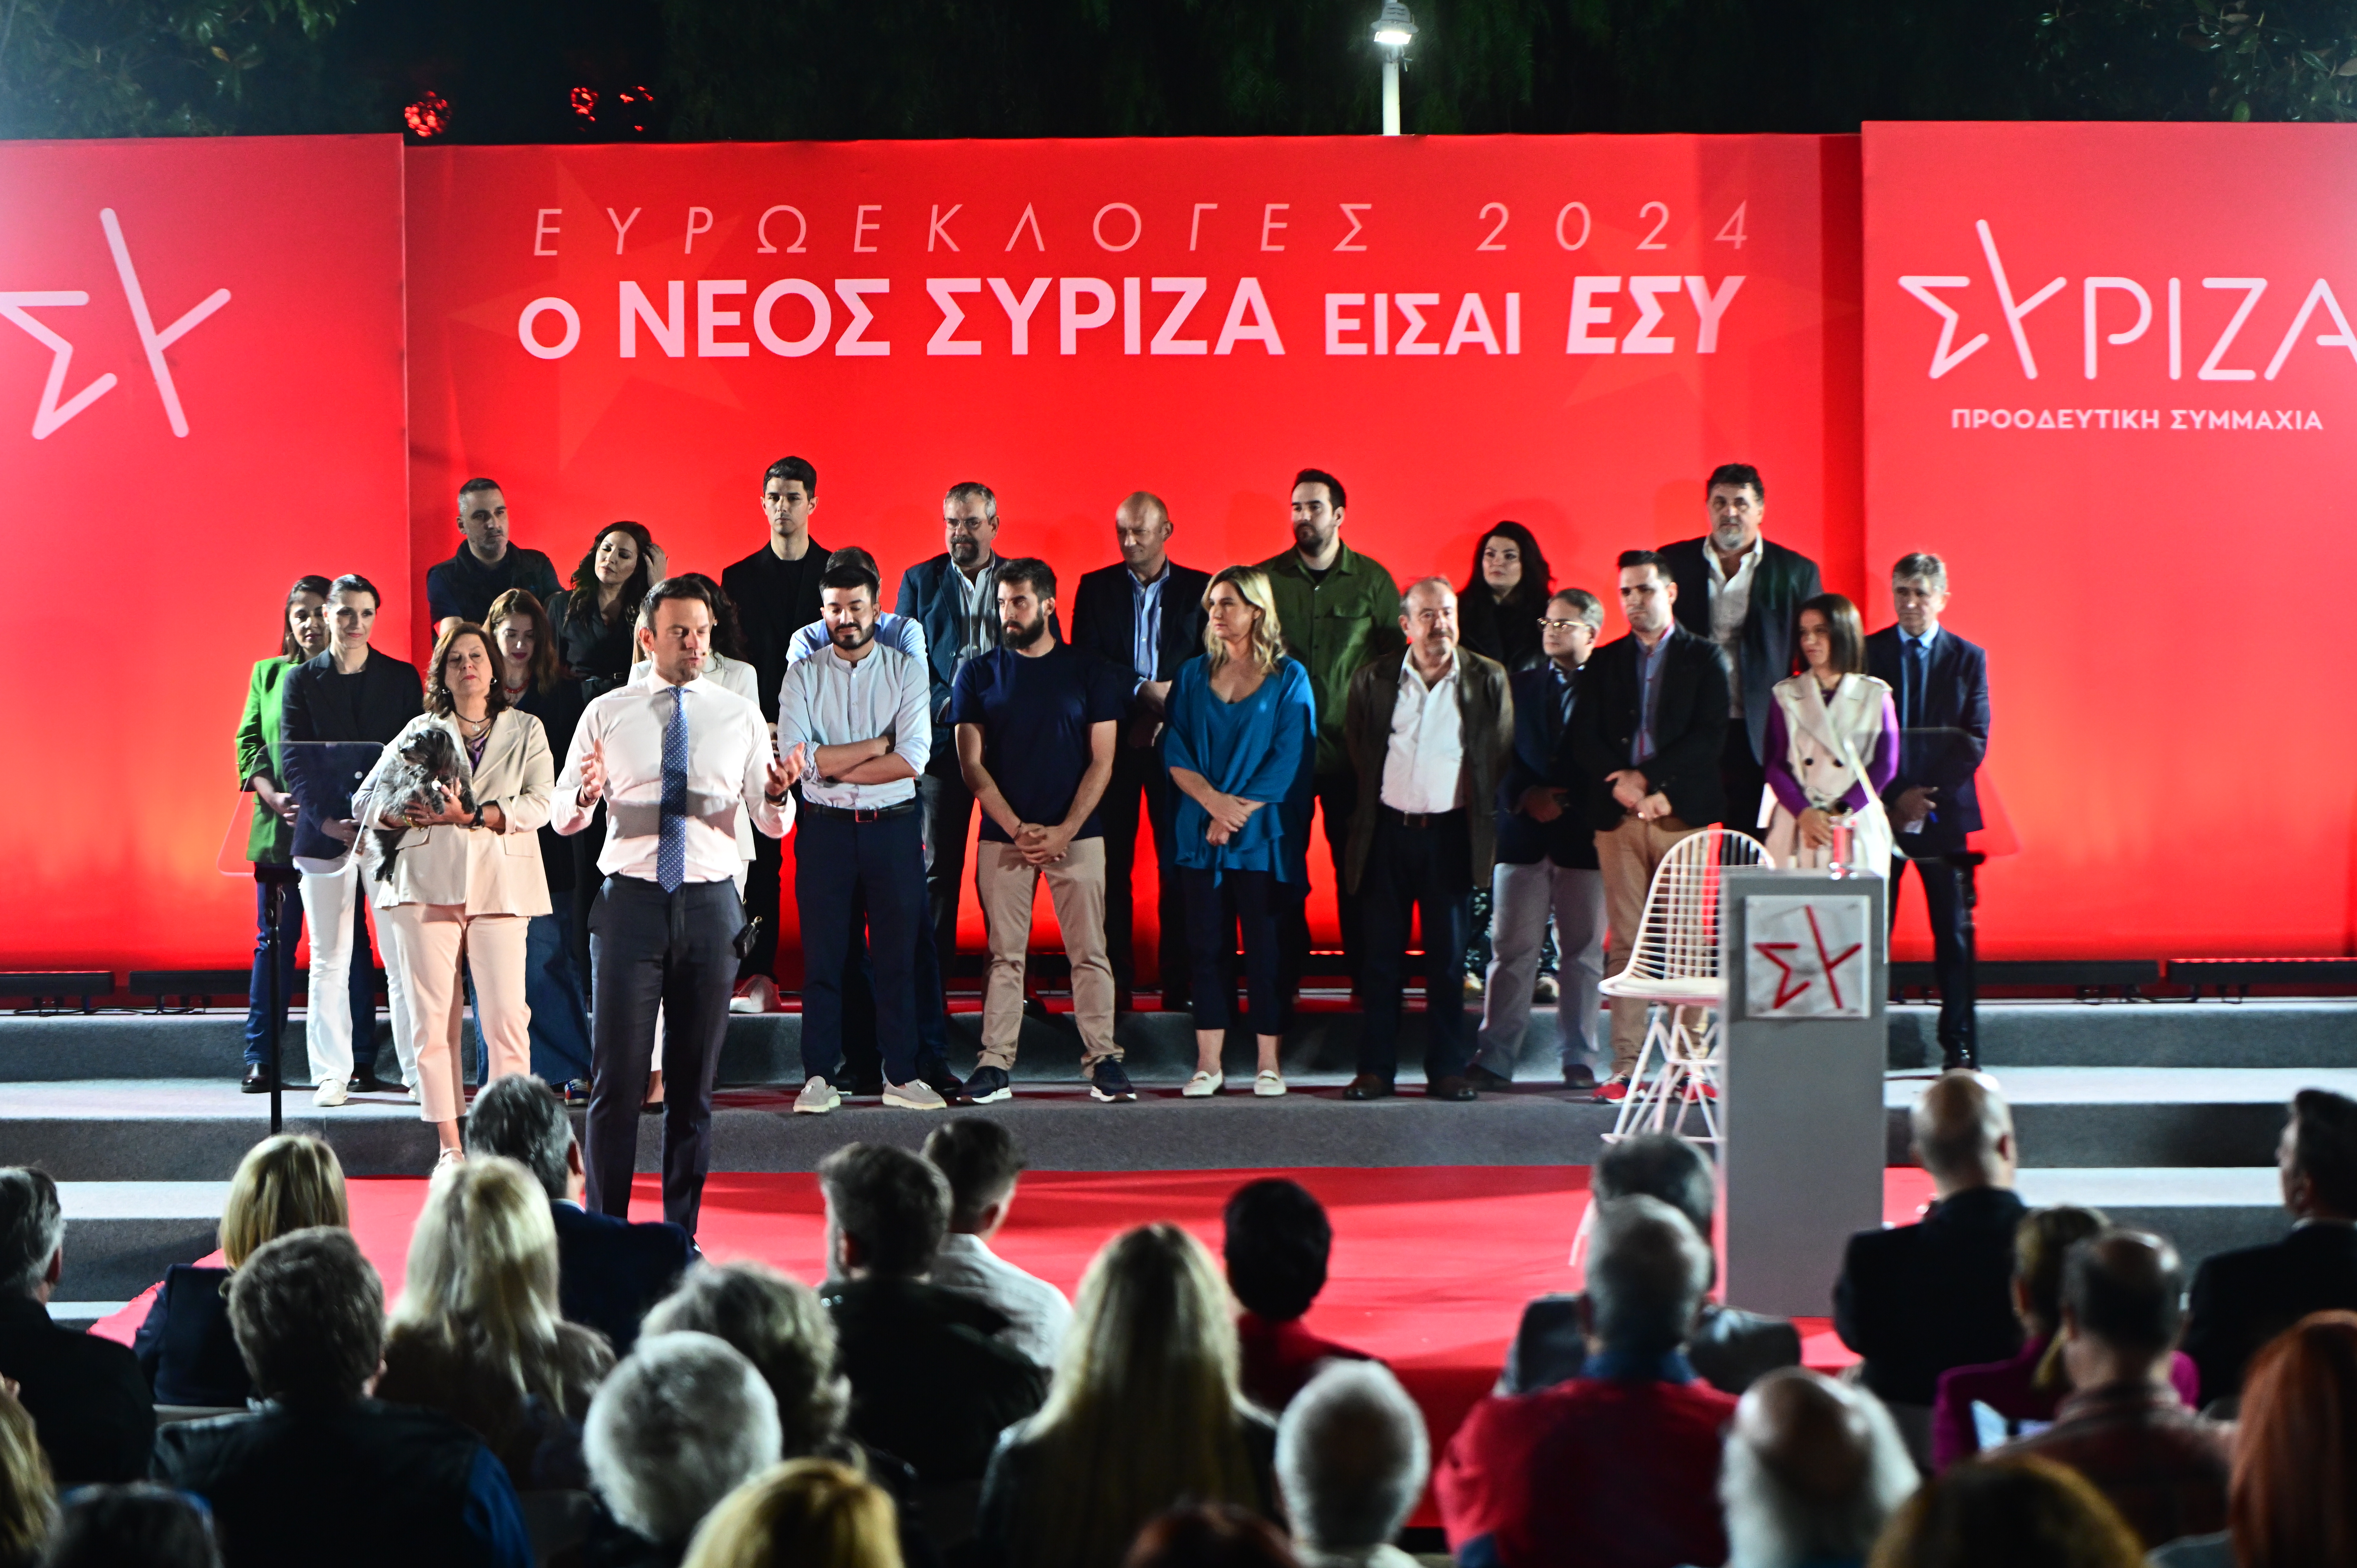 ΣΥΡΙΖΑ: Πώς θα γίνει η ψηφοφορία για τα πρόσωπα που θα μπουν στο ψηφοδέλτιο του κόμματος στις Ευρωεκλογές